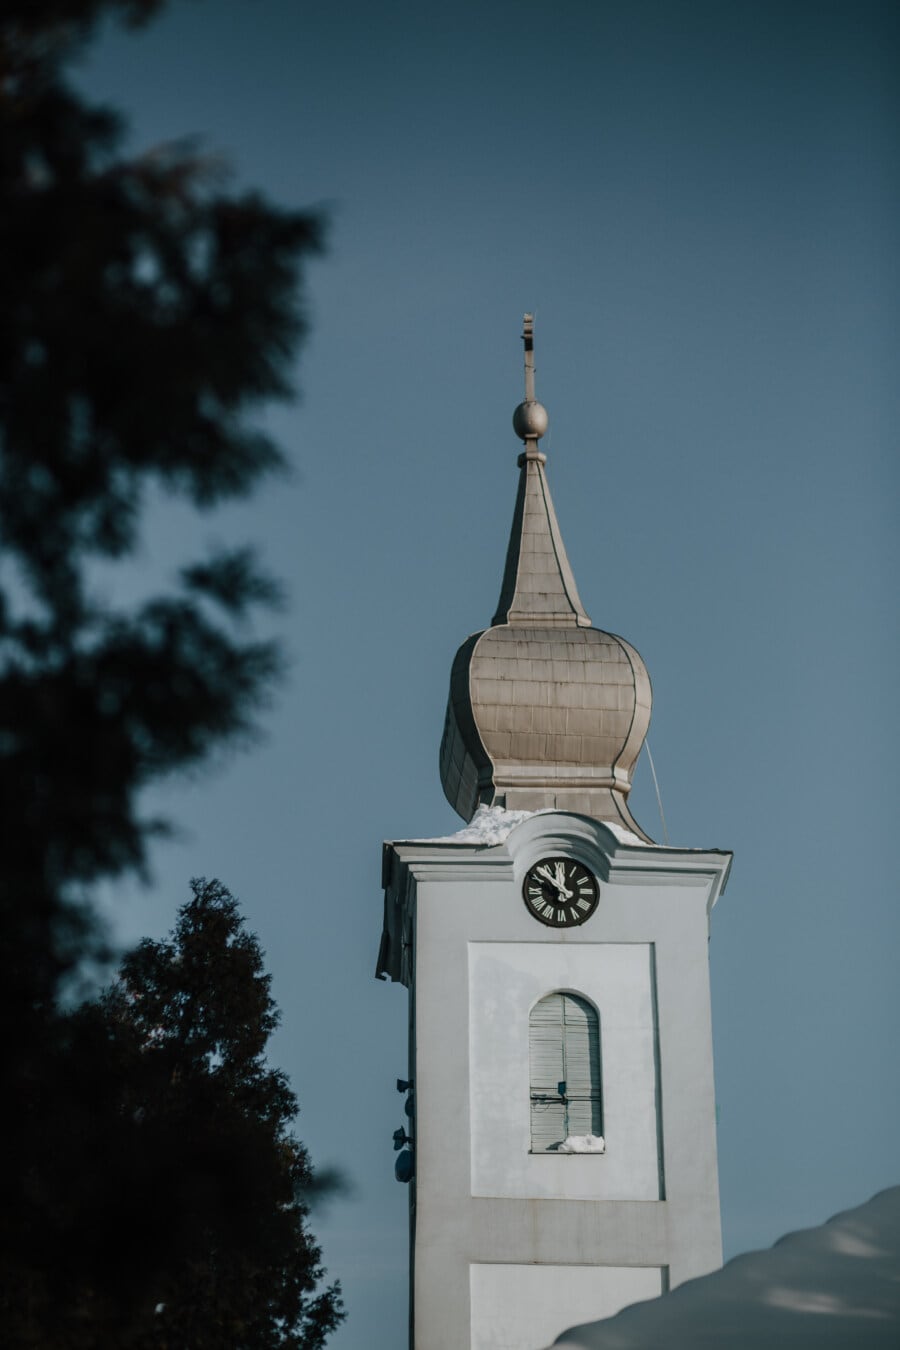 Kirchturm, katholische, grau, auf dem Dach, Kirche, Kreuz, Religion, Turm, Gebäude, Architektur